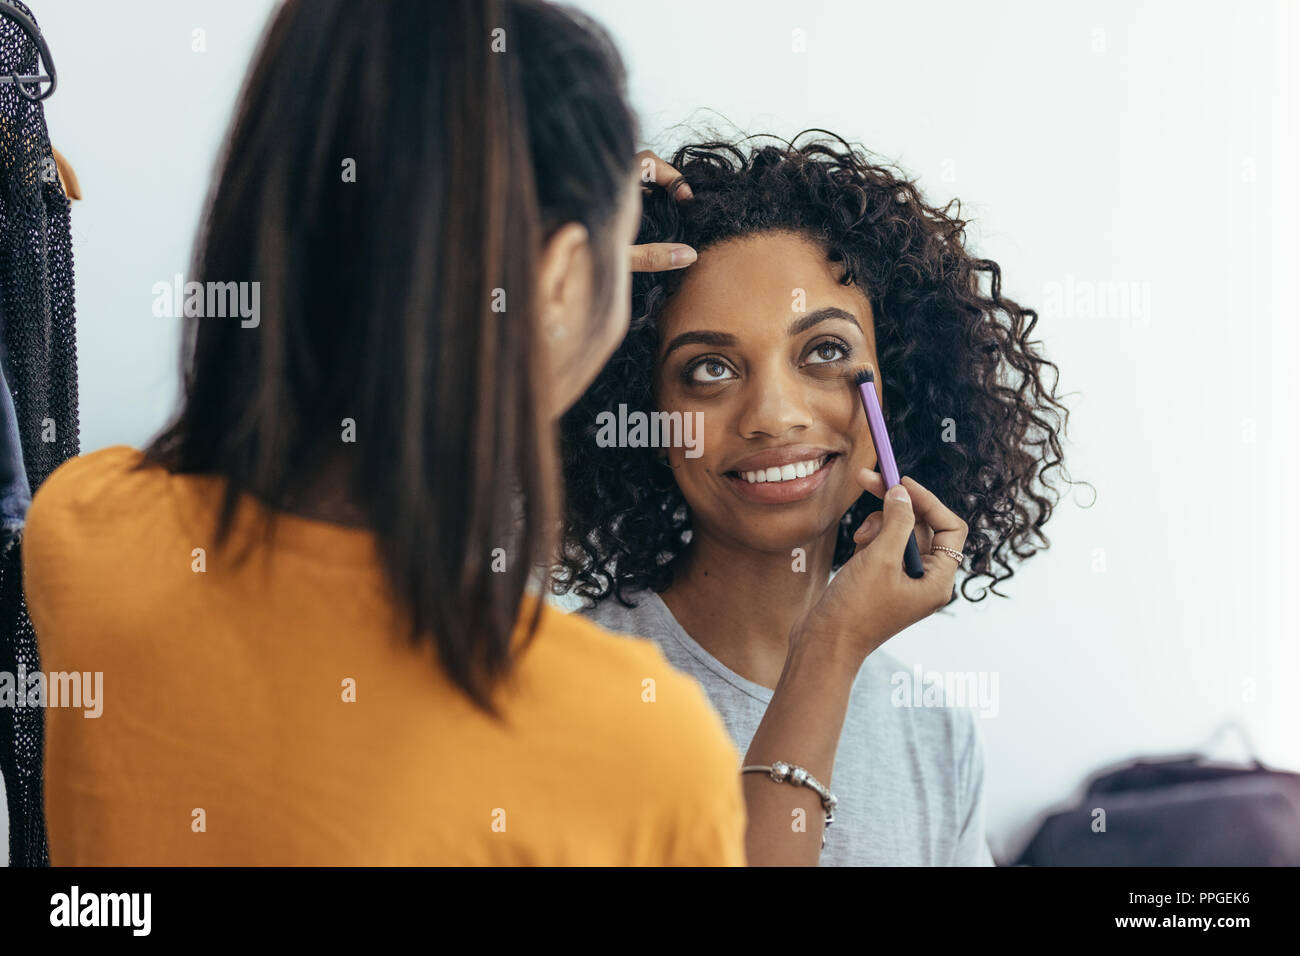 L'artiste de maquillage ombres sous les yeux pour enlever les cernes. L'objet de modèle d'un miroir pour se préparer à la séance photo. Banque D'Images